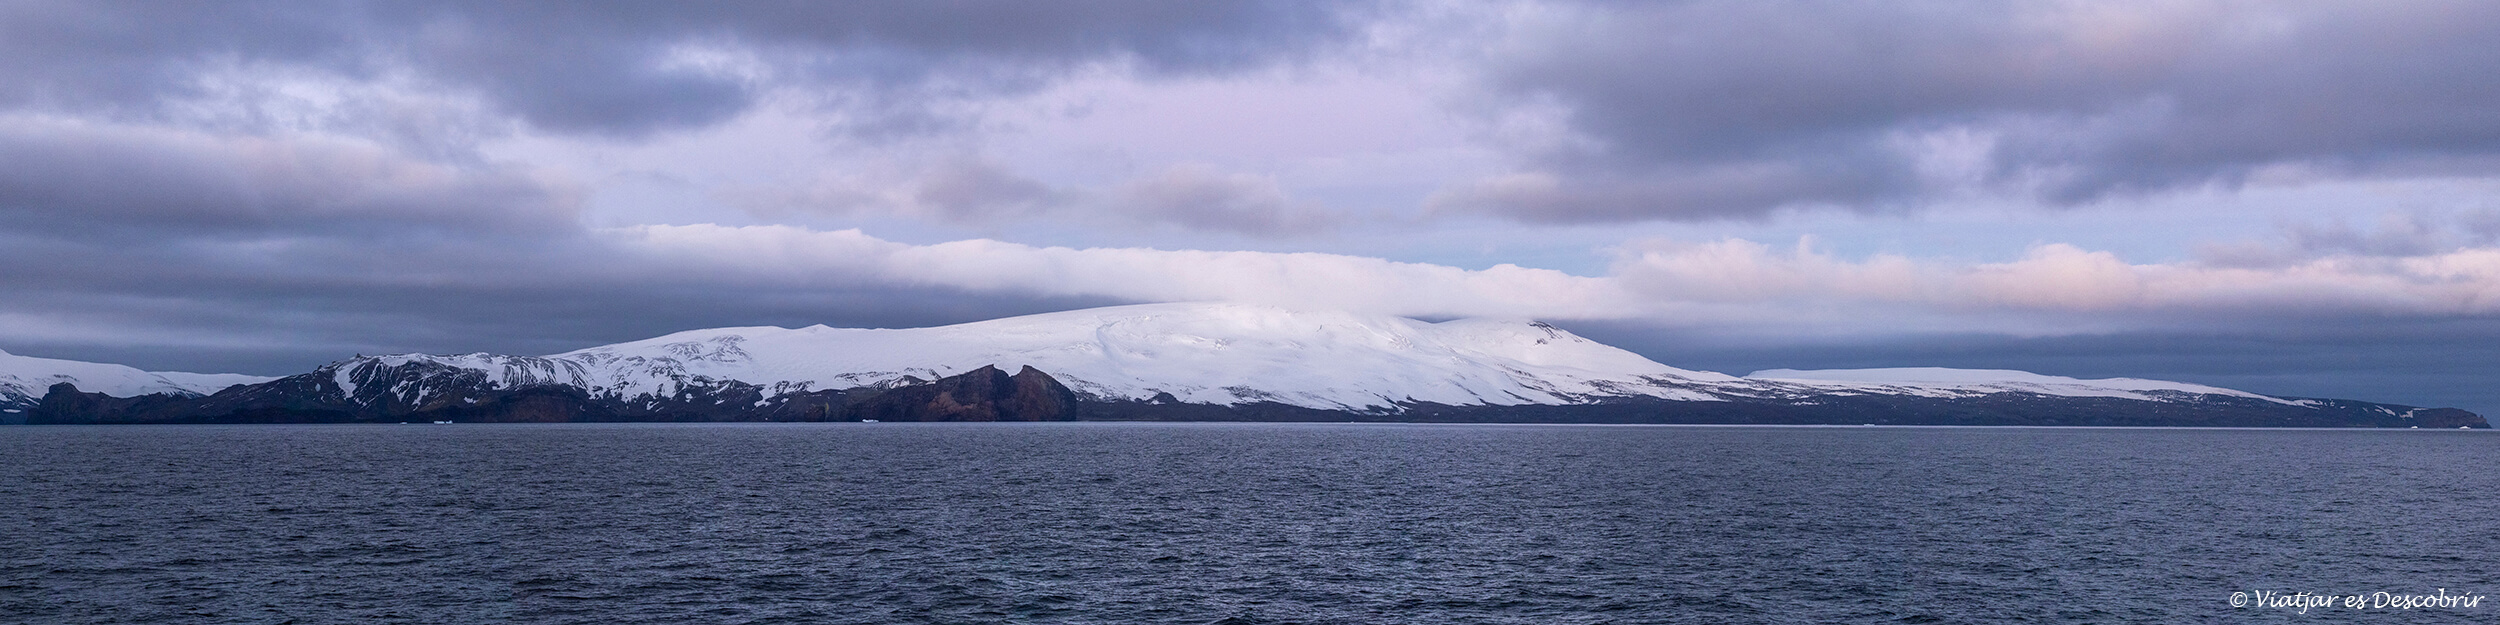 panoràmica de les muntanyes nevades de les illes shetland del sud durant una albada al mes de febrer